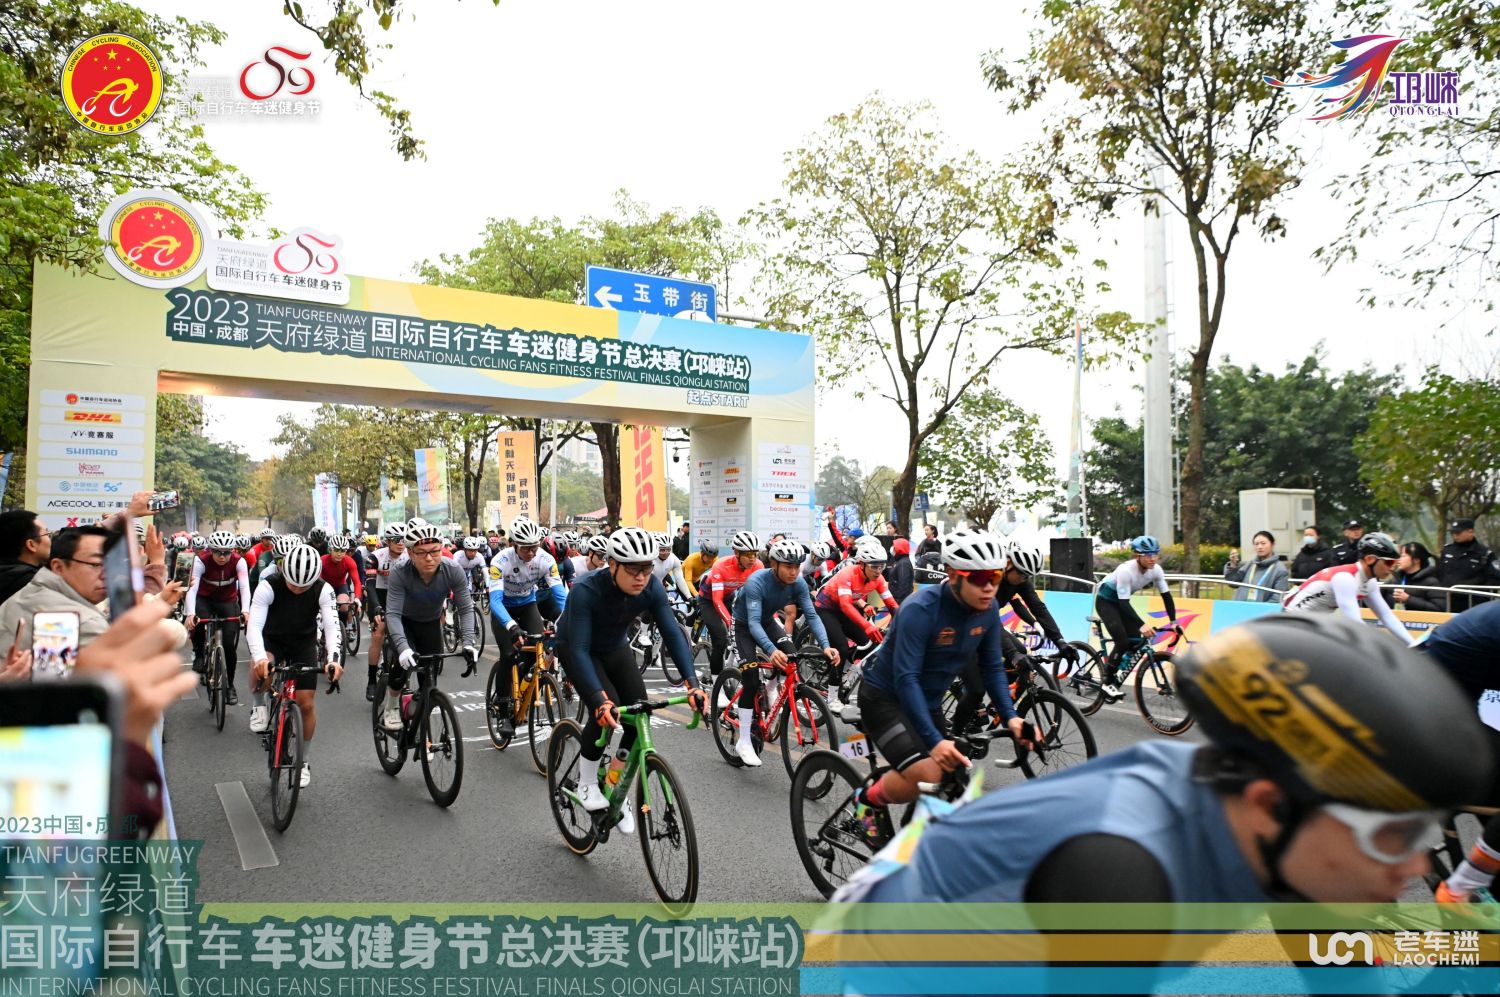 Beoka pomaga športnikom pri sprintu do finala mednarodnega kolesarskega ljubiteljskega fitnes festivala Tianfu Greenway 2023